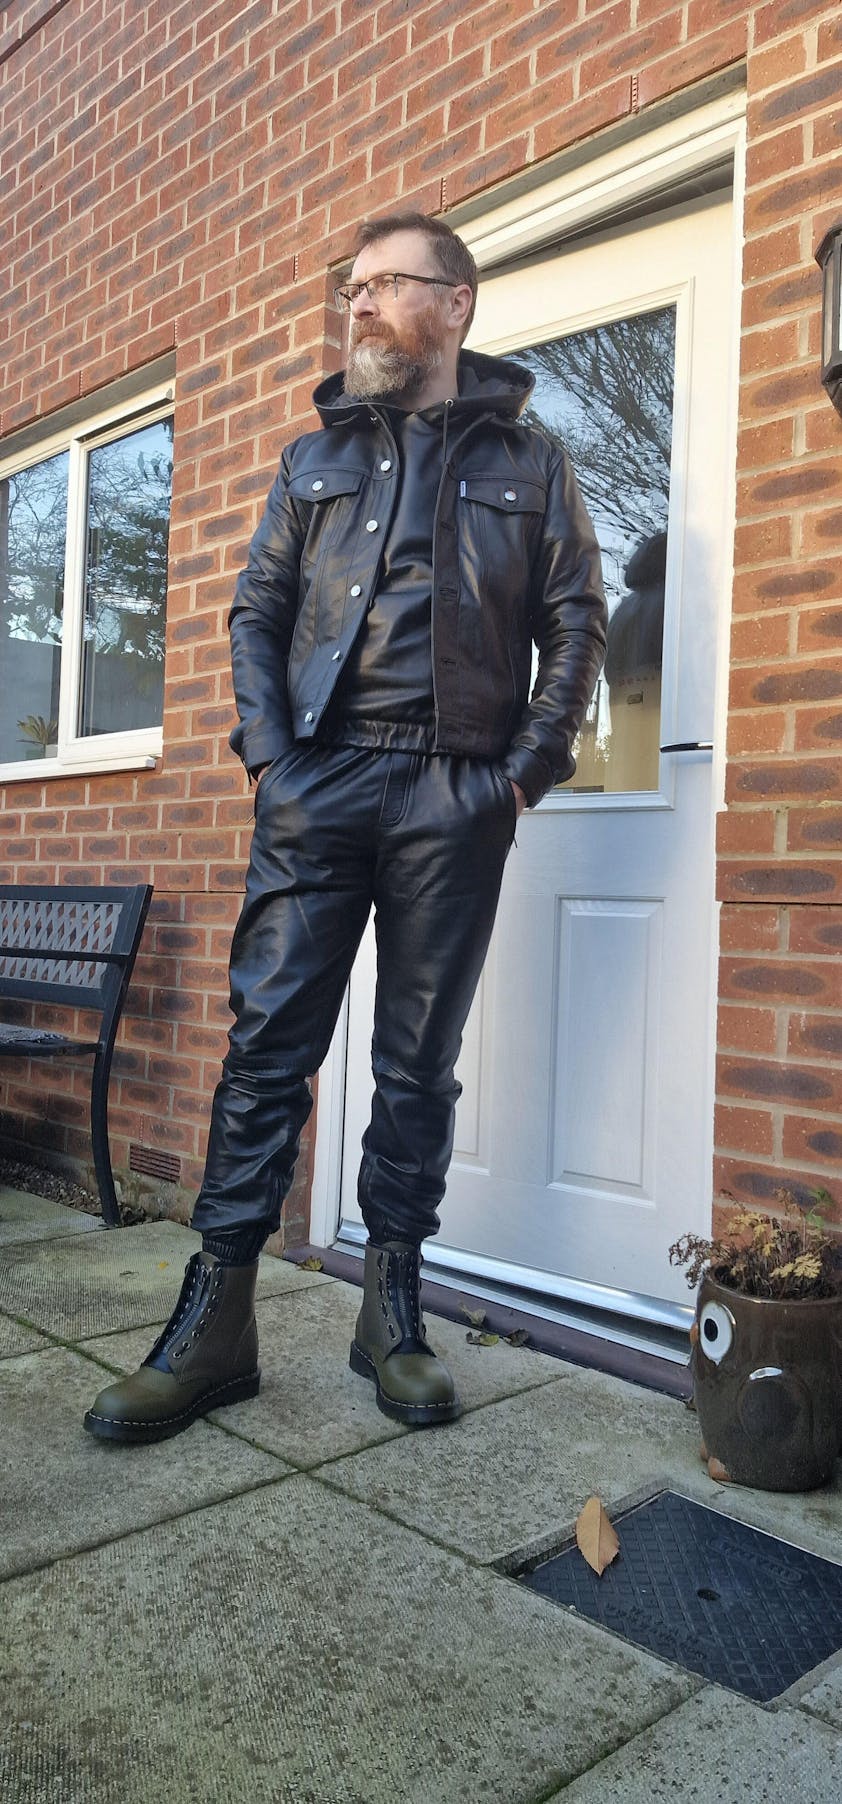 Black Leather Trucker Sleeveless Cropped Jacket